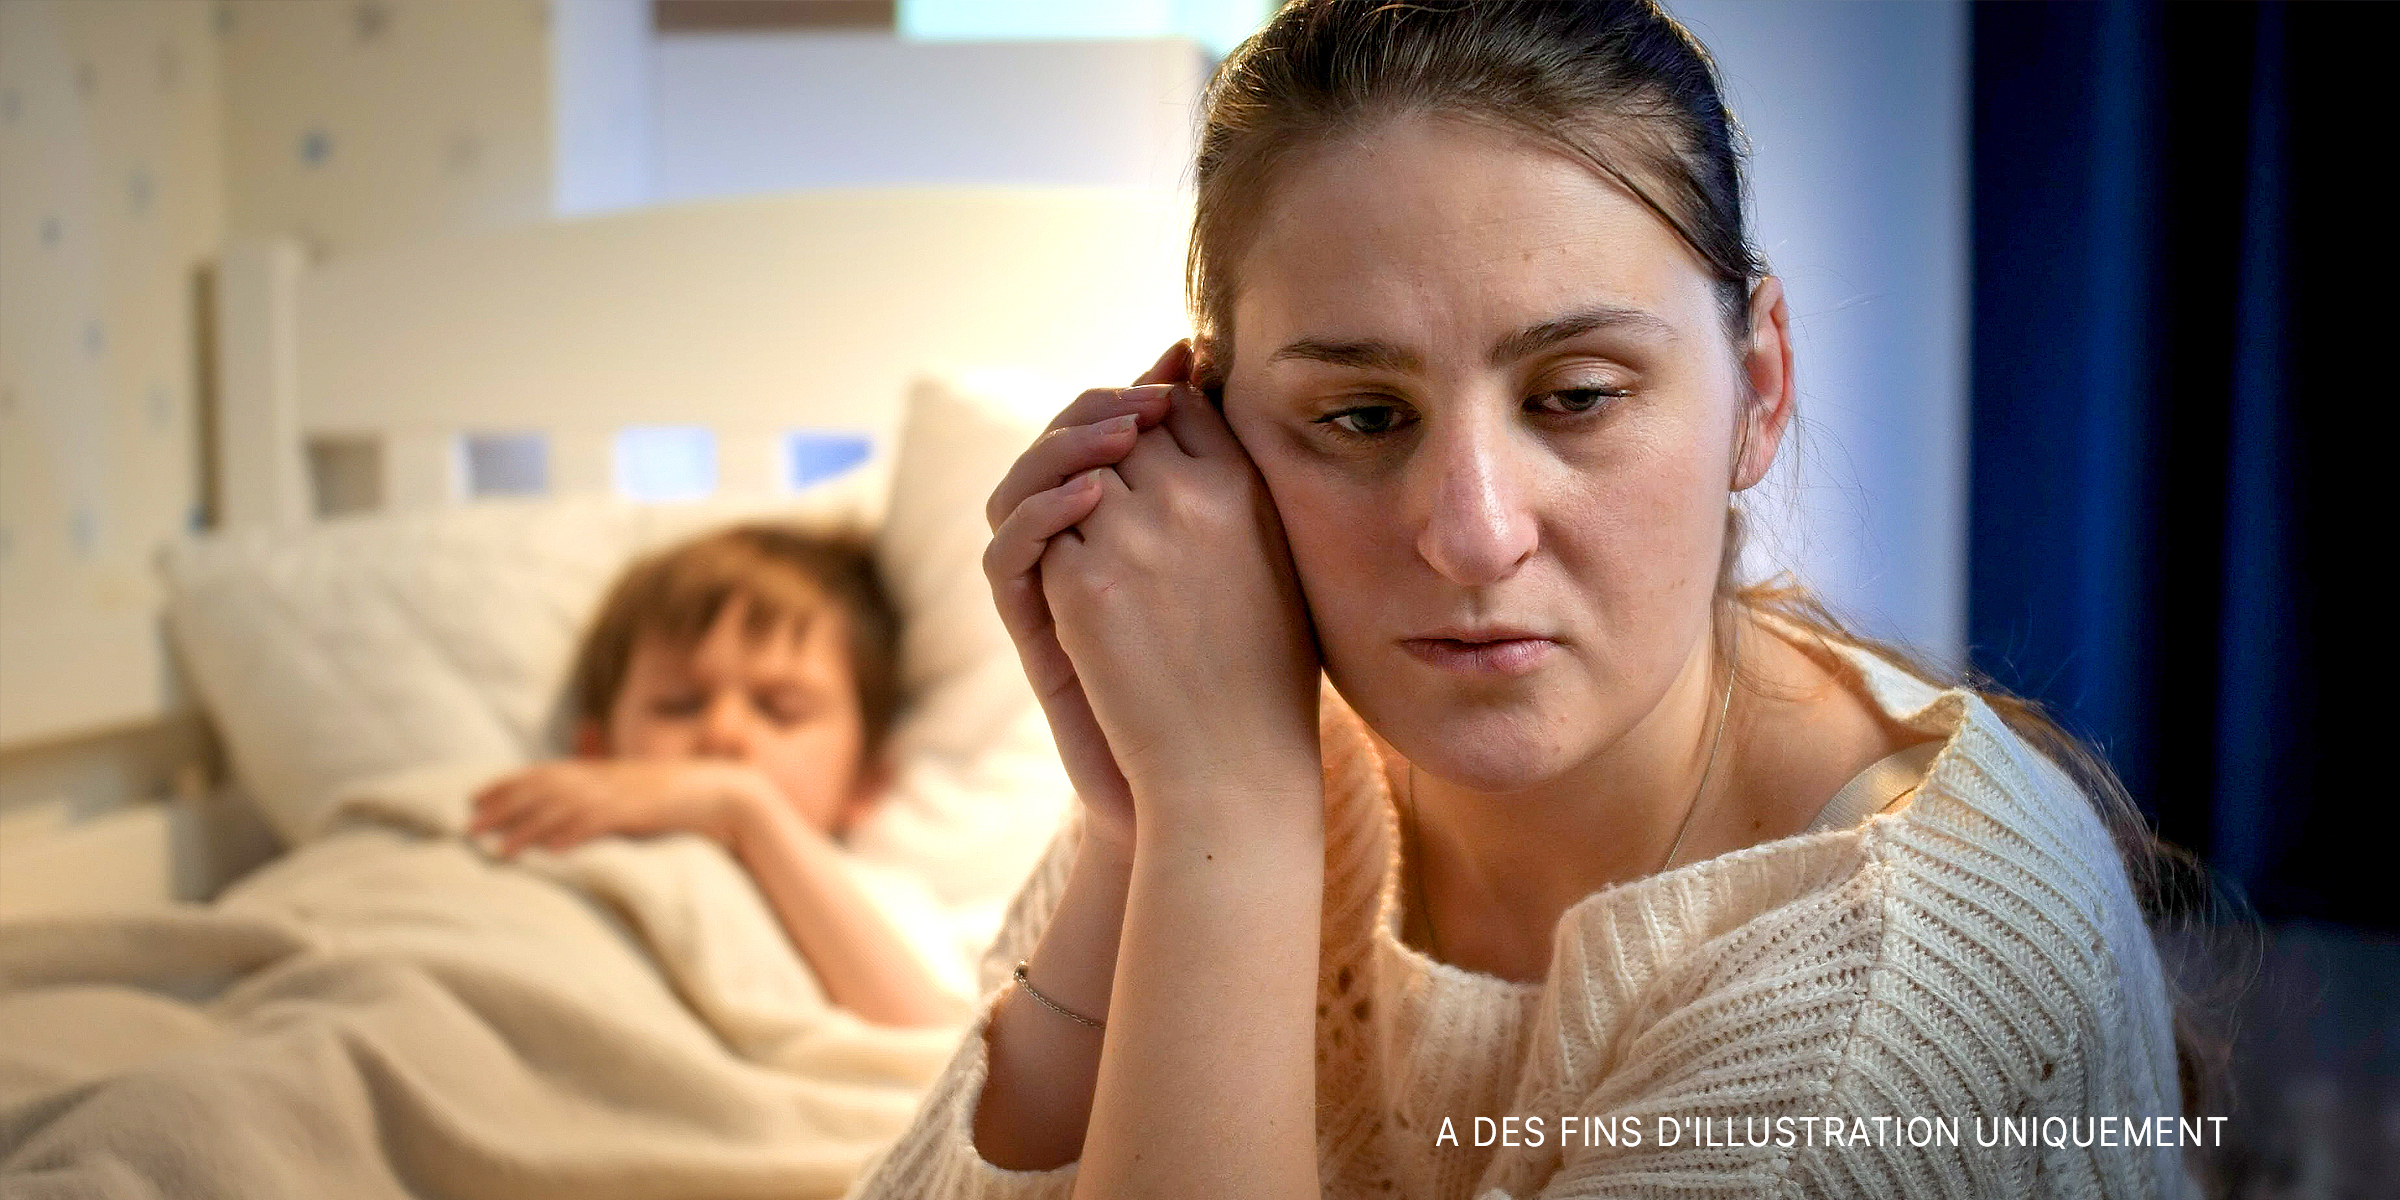 Une femme bouleversée assise à côté d'un enfant qui dort dans son lit | Source : Shutterstock